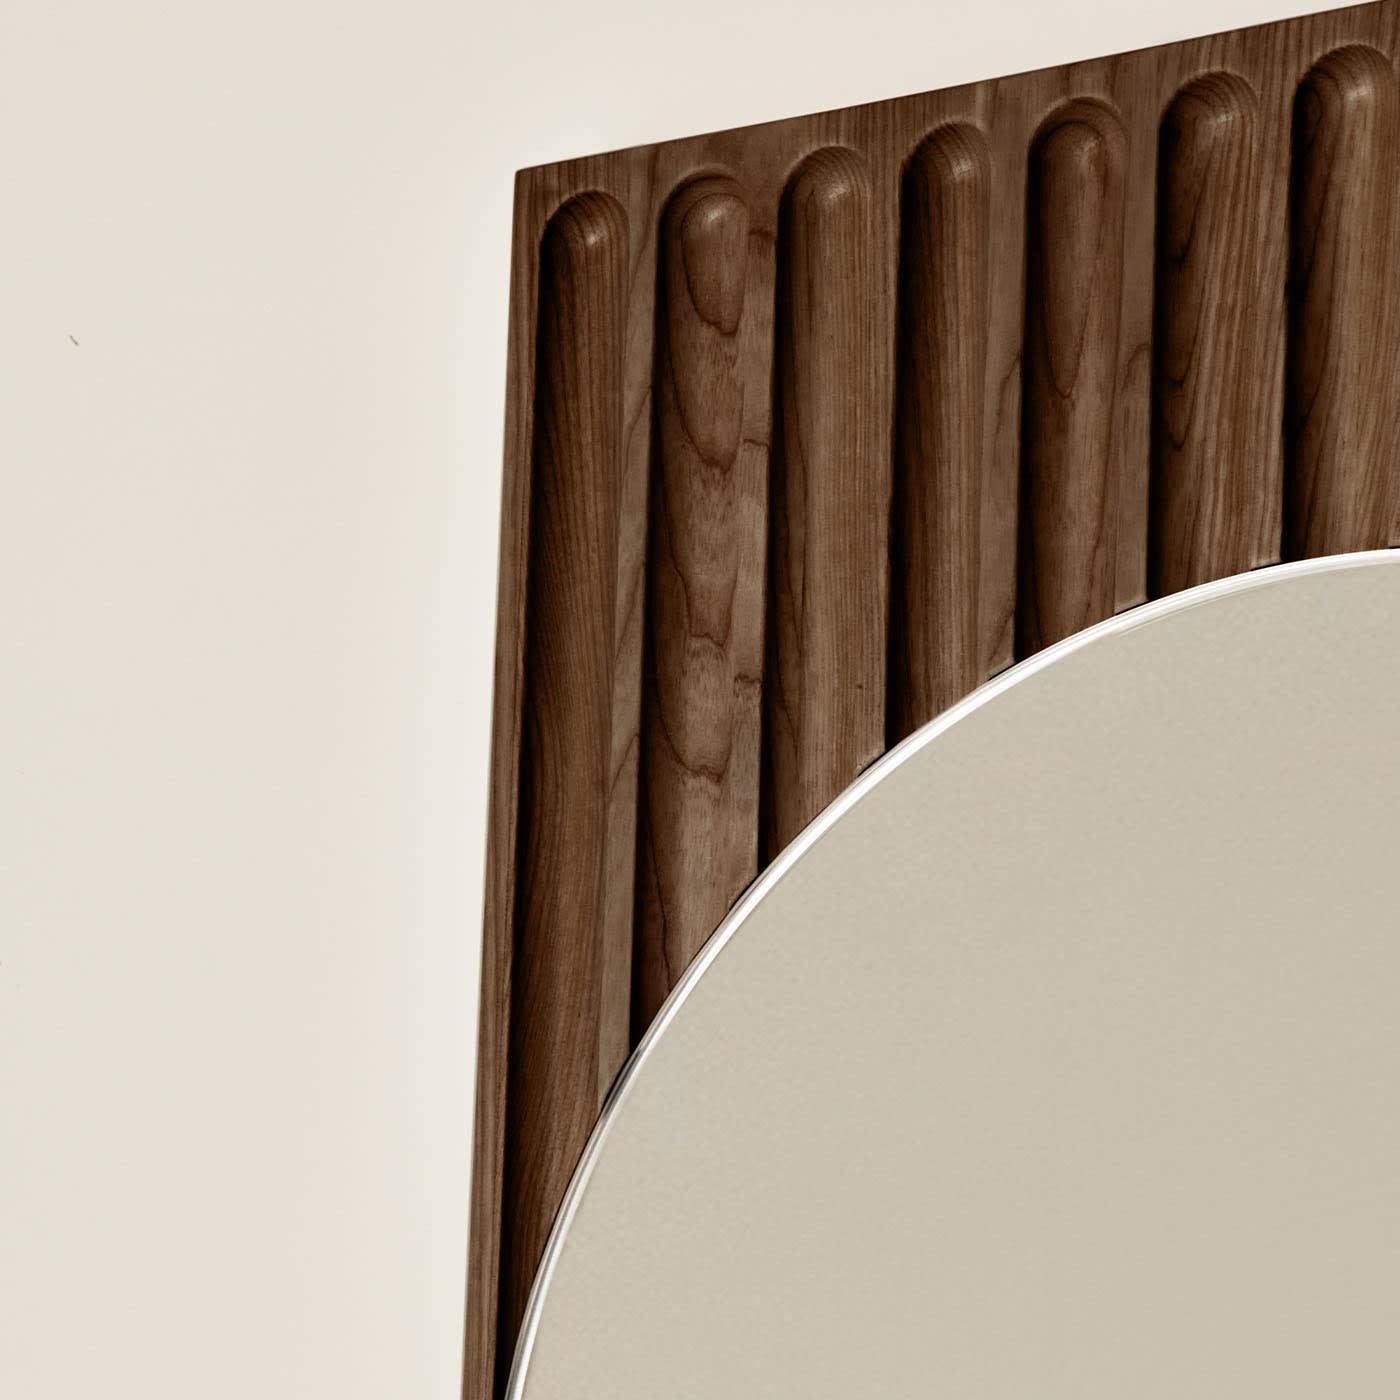 Die Tutto Sesto-Spiegel sind Teil der Kollektion 2023 zeitgenössischer Massivholzmöbel. Die aus dem Dialog zwischen Dale Italia und Cono Studio hervorgegangene Produktreihe zeichnet sich durch eine essentielle Ästhetik aus, die im Einklang mit den